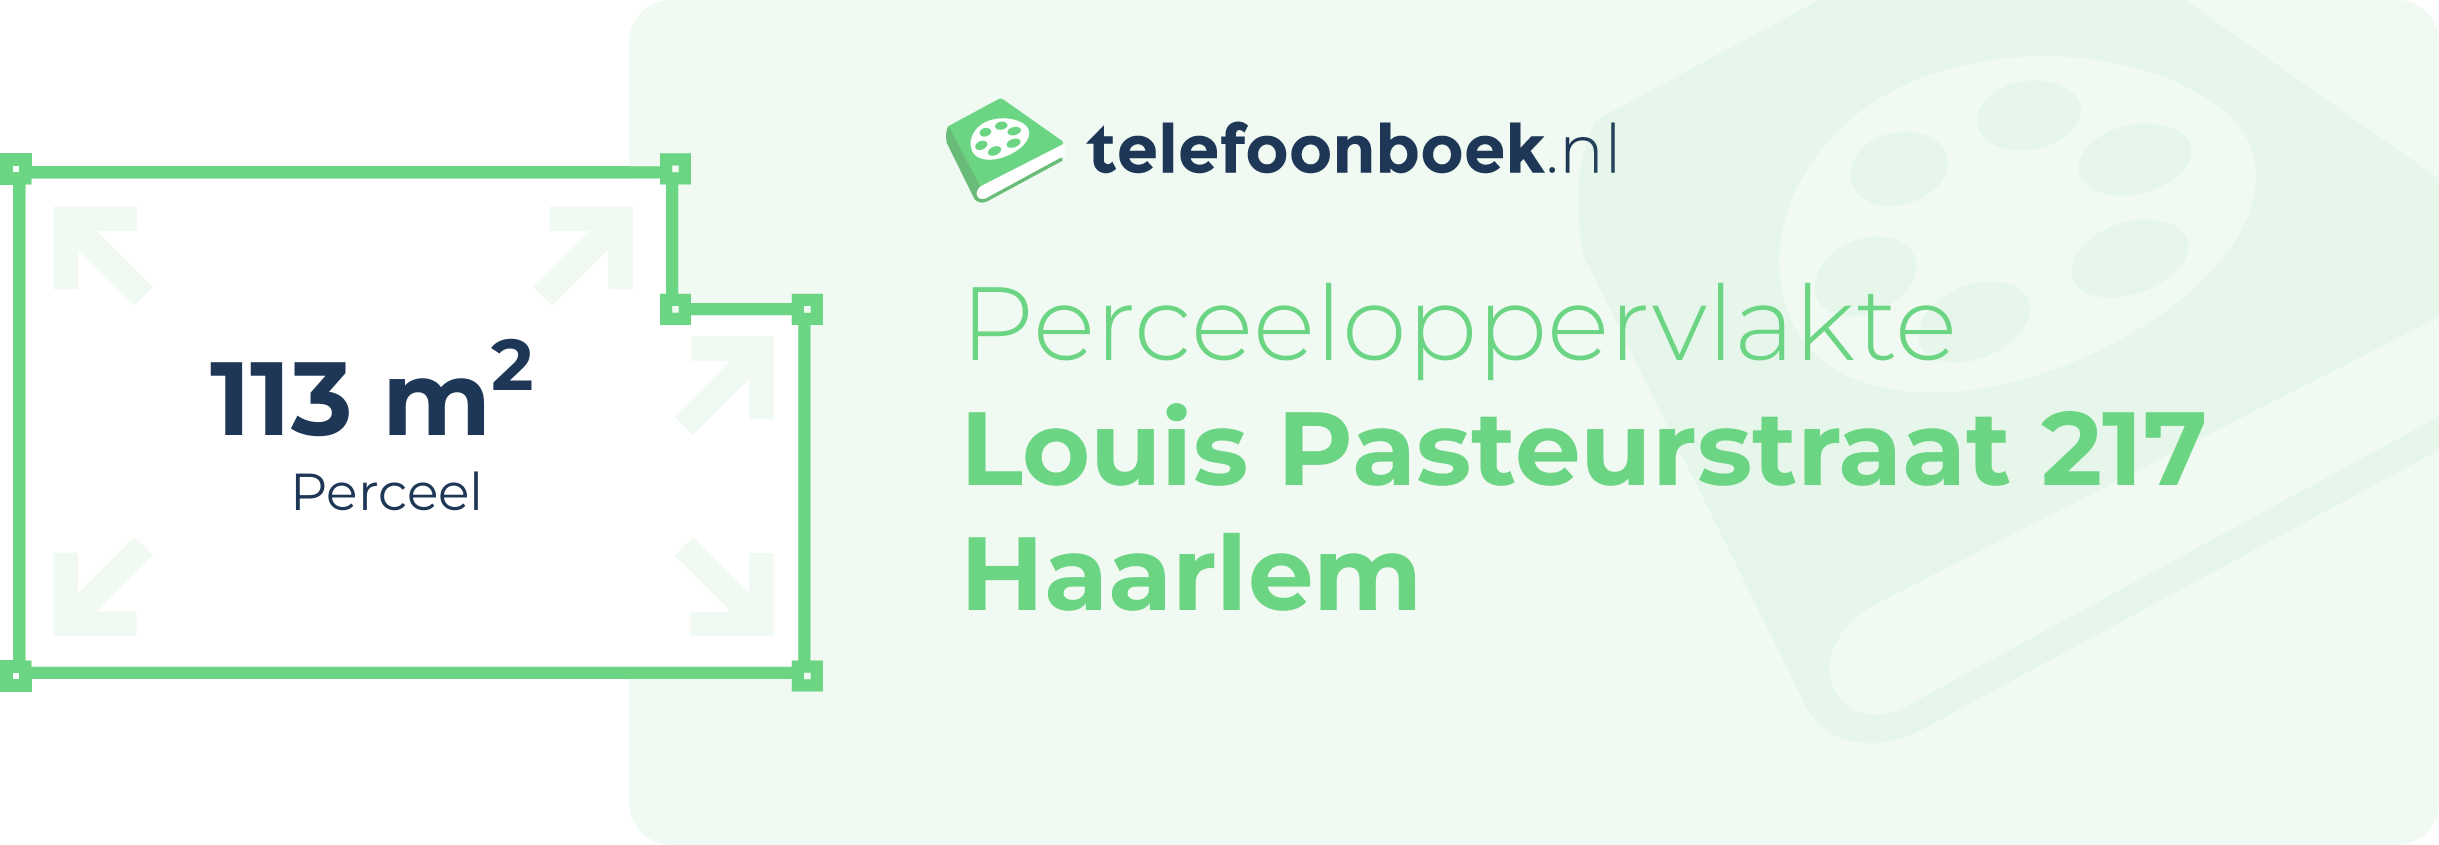 Perceeloppervlakte Louis Pasteurstraat 217 Haarlem